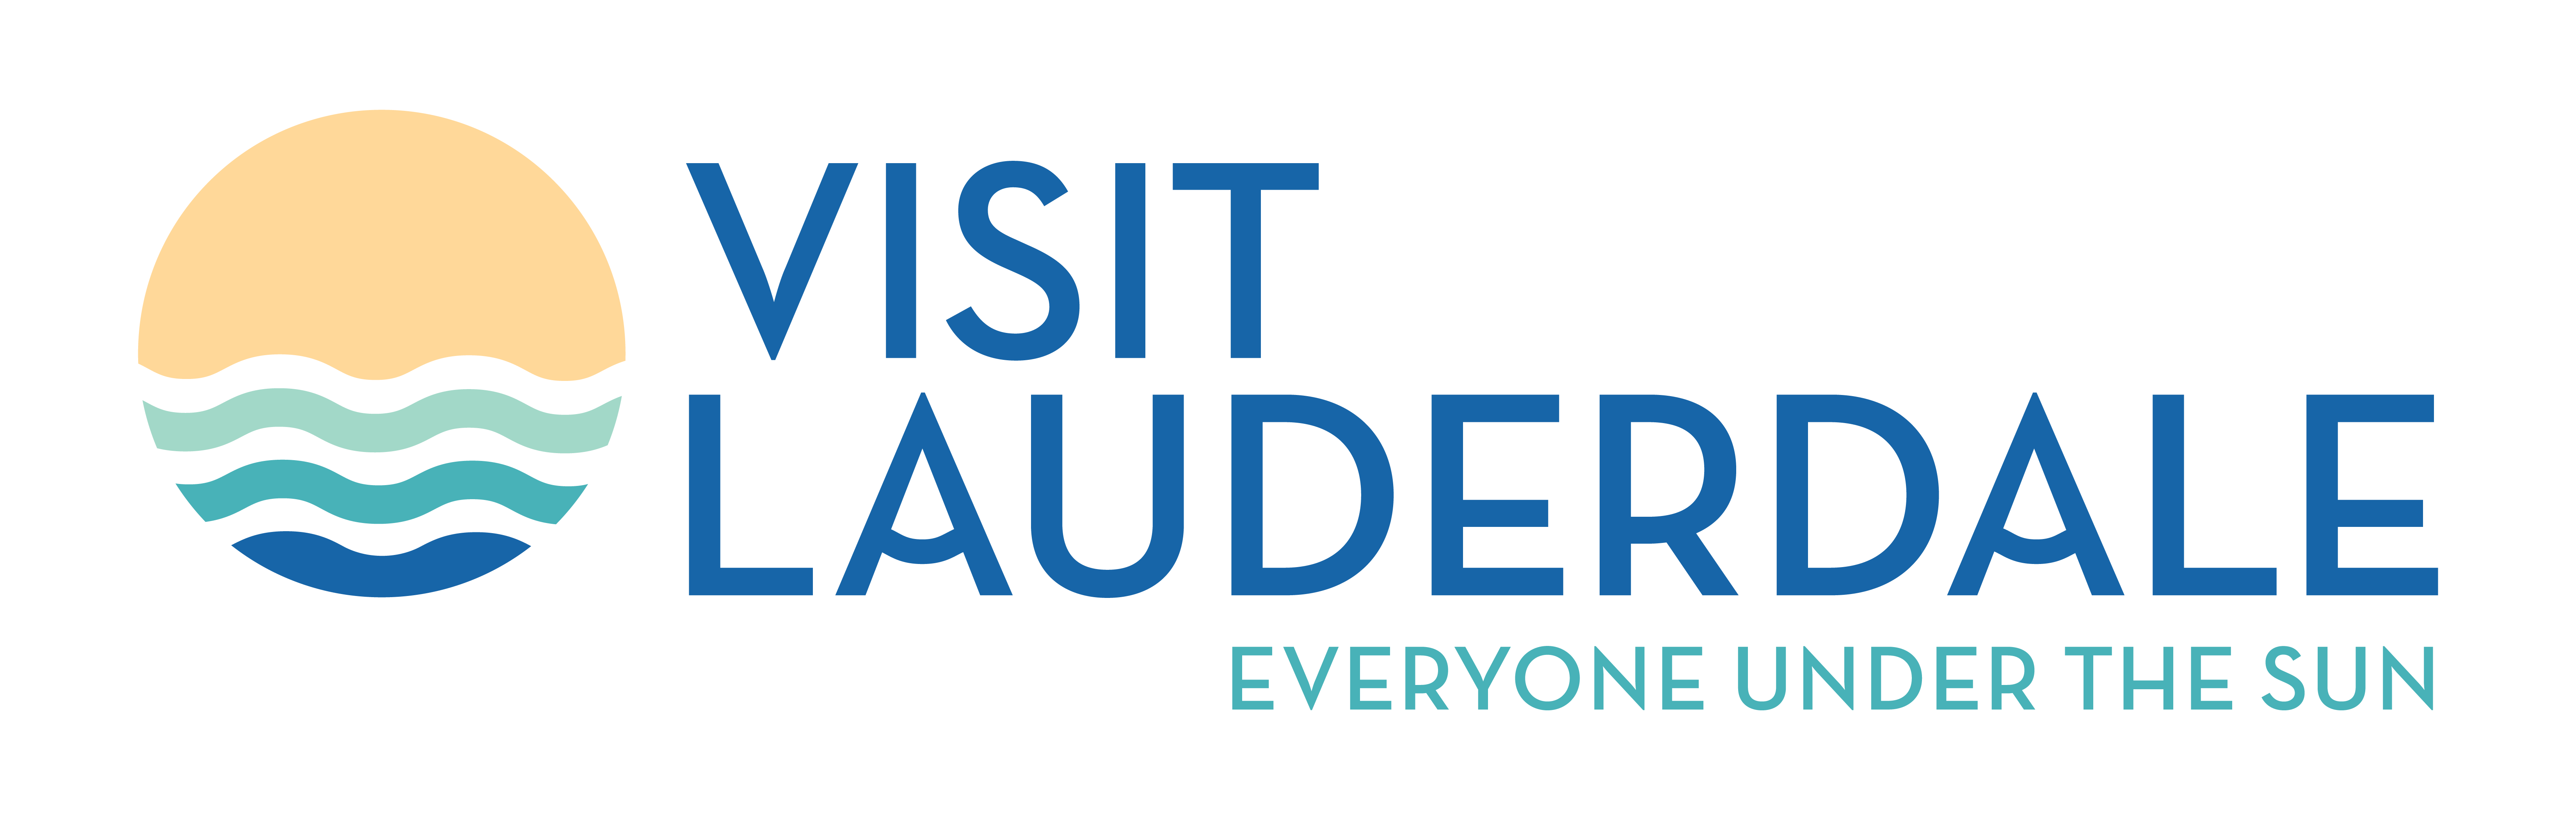 Visit Fort Lauderdale logo